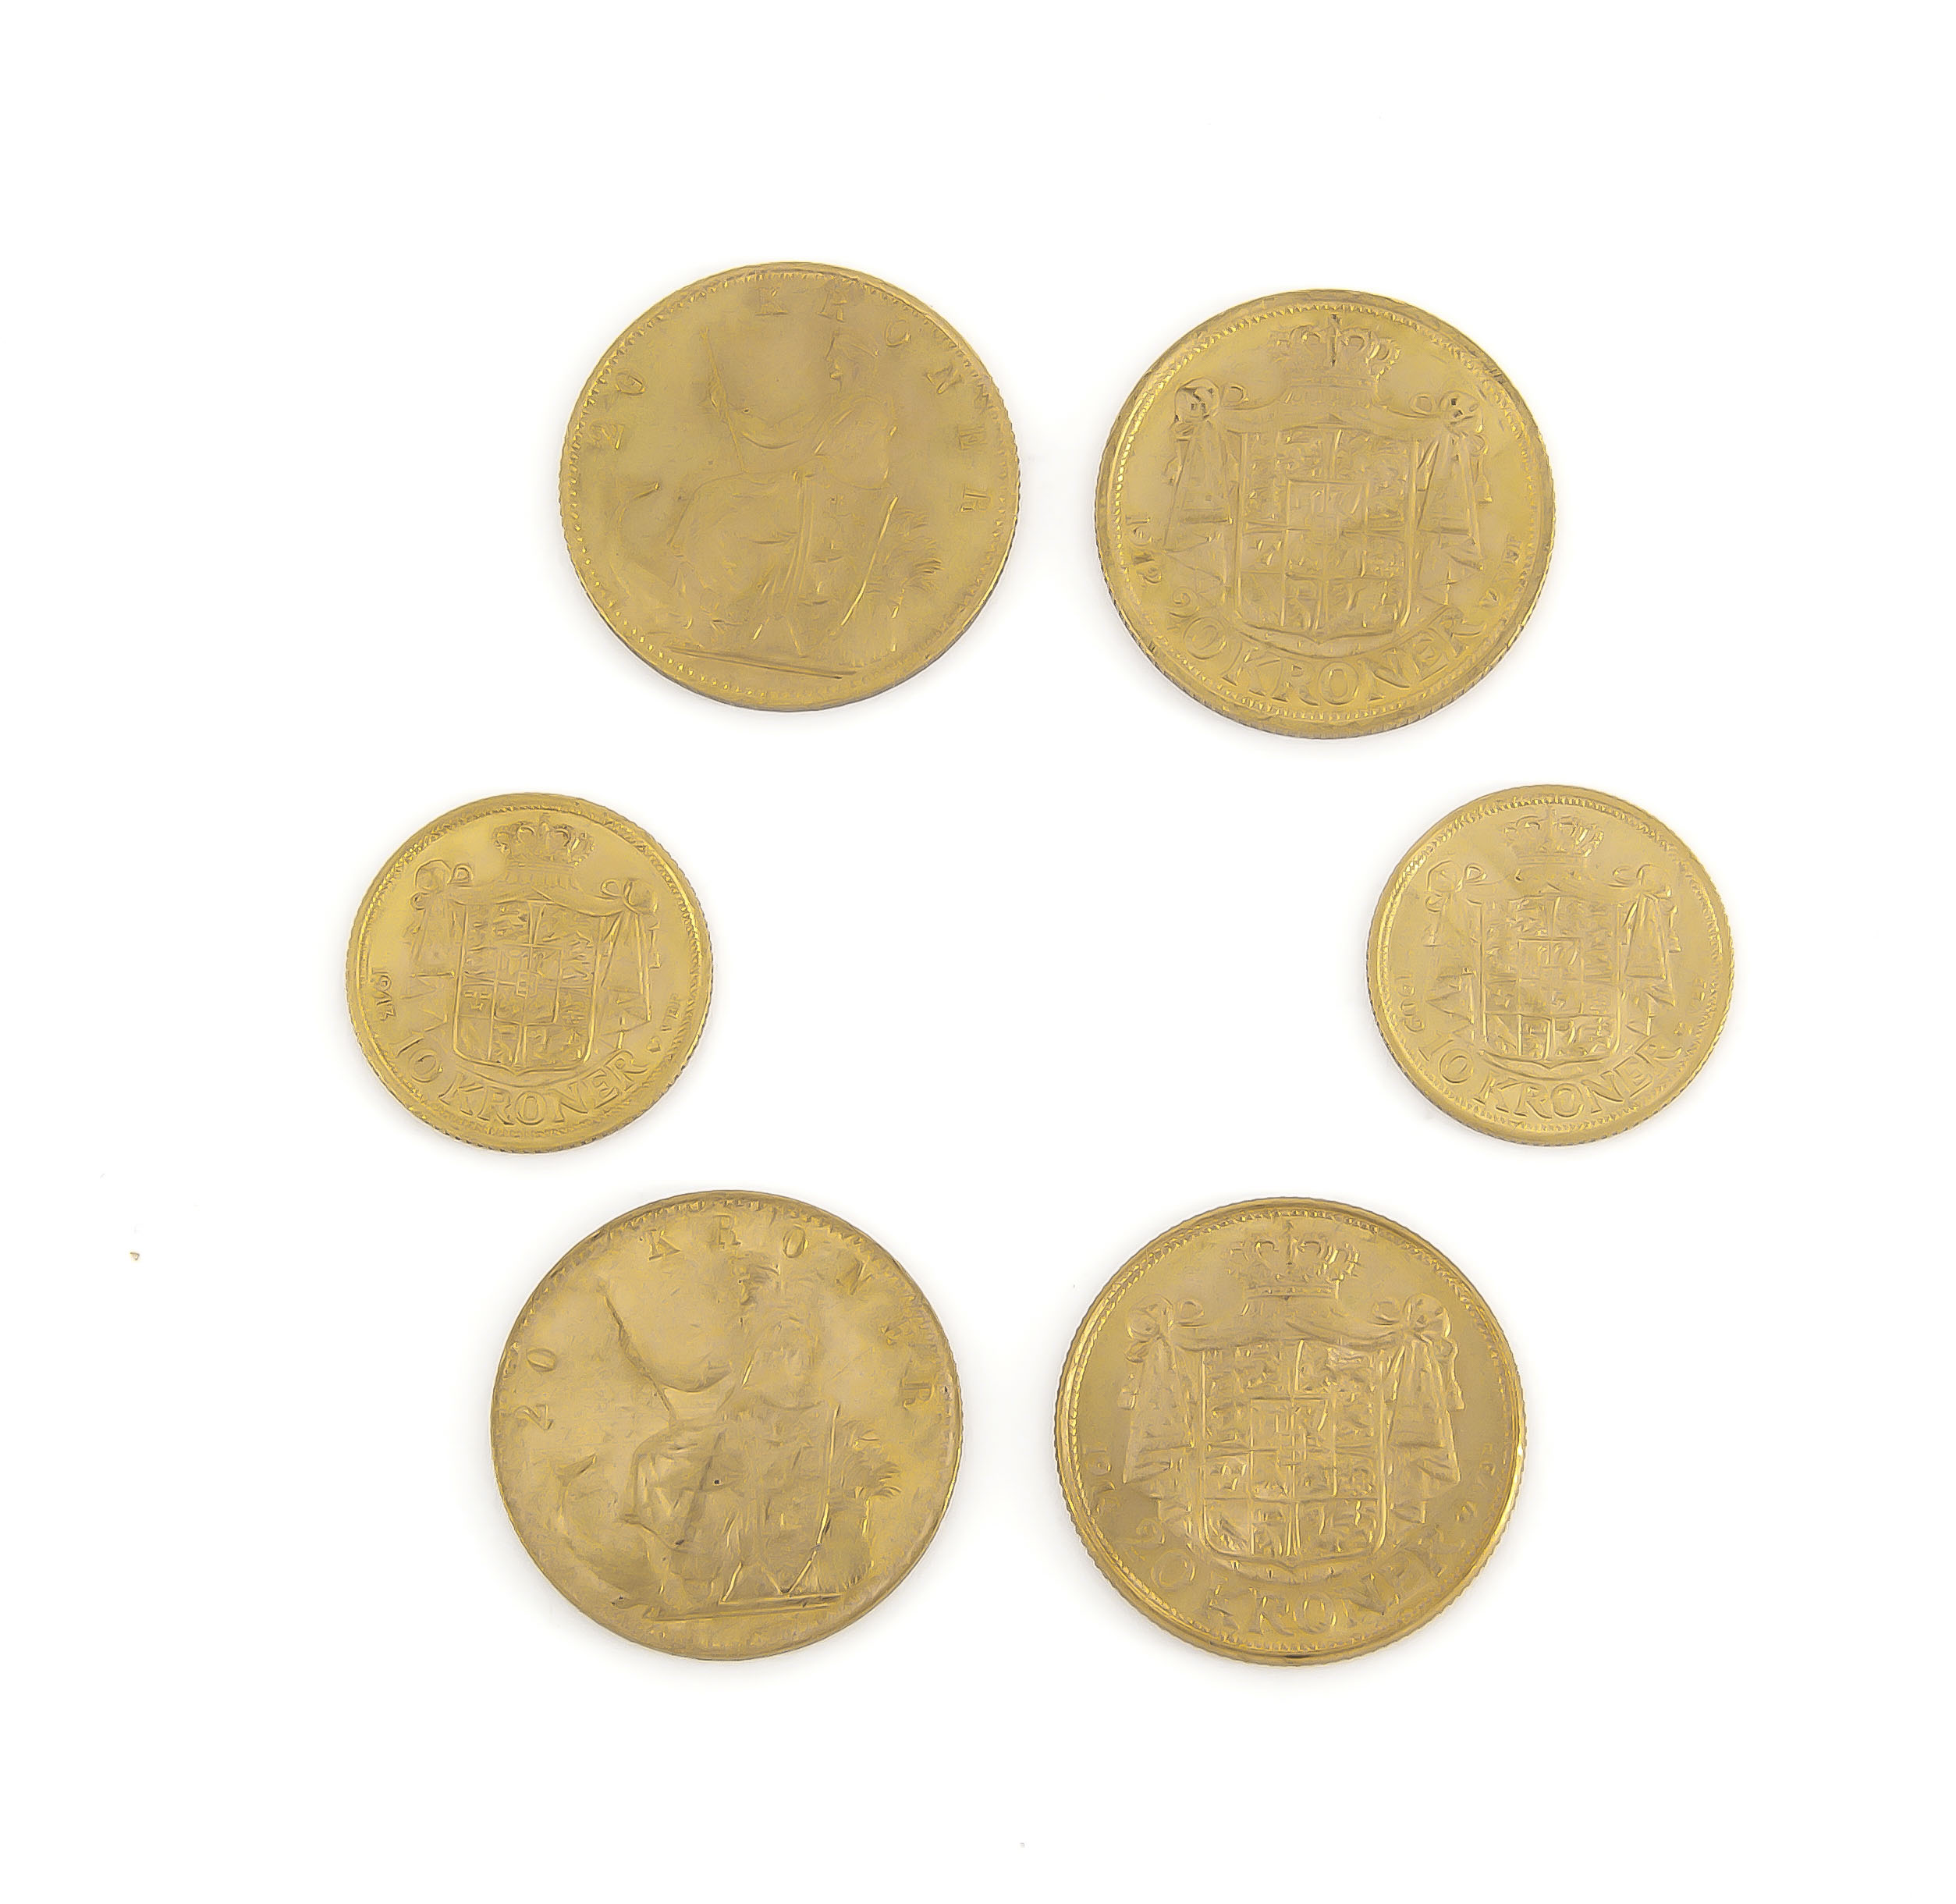 Dänemark, 4 x 20 Kronen 1876, 1890, 1912, 1914, 2 x 10 Kronen 1909, 1913, zus. 40,3 g,sehr schön bis - Image 2 of 2